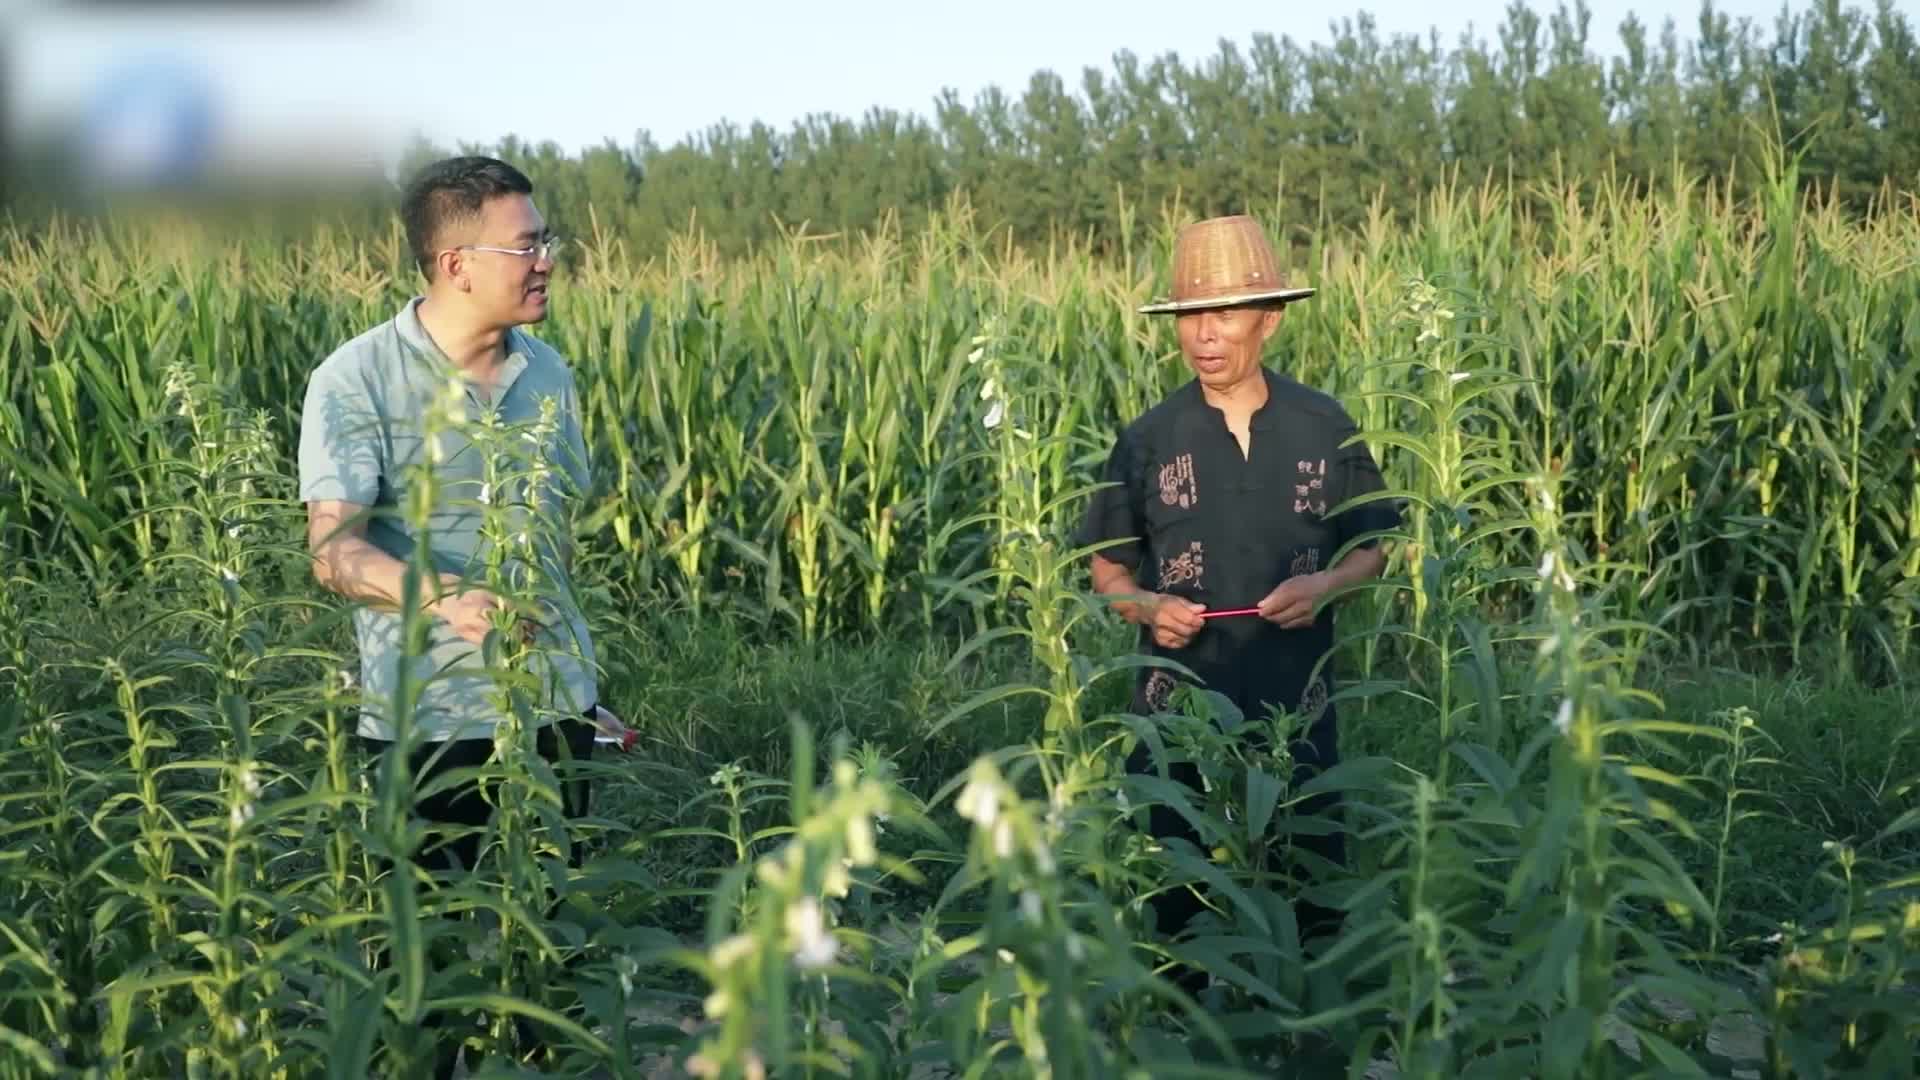 短视频《非遗文化·匠心传承》—— 正道小磨香油芝麻酱制作技艺